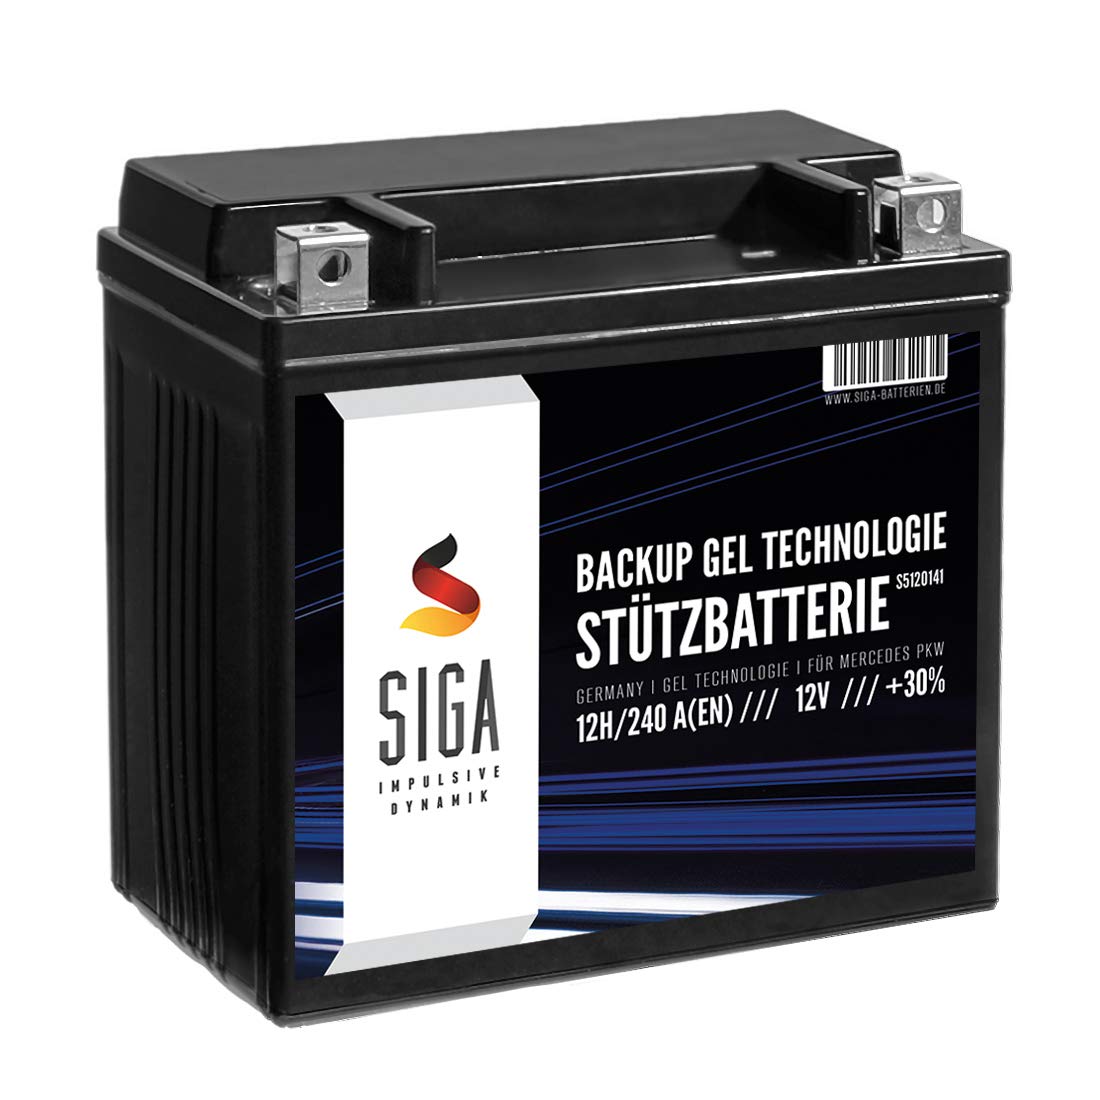 SIGA Stützbatterie 12V 12Ah Gel Batterie Backup Batterie A2115410001 und 61217586977 Longlife Technologie sofort einsatzbereit vorgeladen auslaufsicher wartungsfrei von SIGA IMPULSIVE DYNAMIK